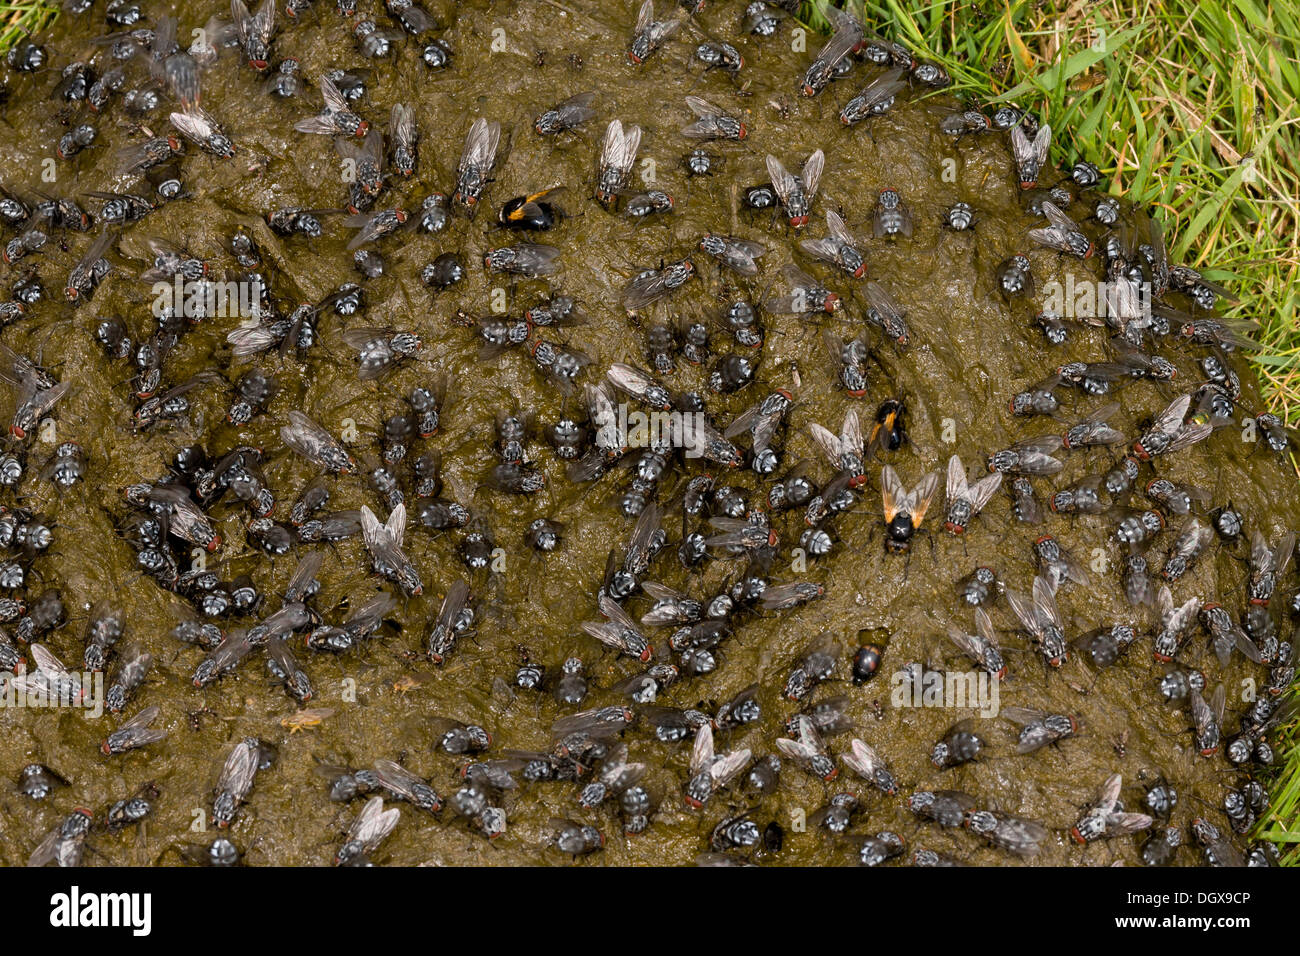 La bouse de vache fortement couverte de mouches, principalement une chair-fly Sarcophaga sp, Midi les mouches et Dung-mouches. Auvergne, France. Banque D'Images